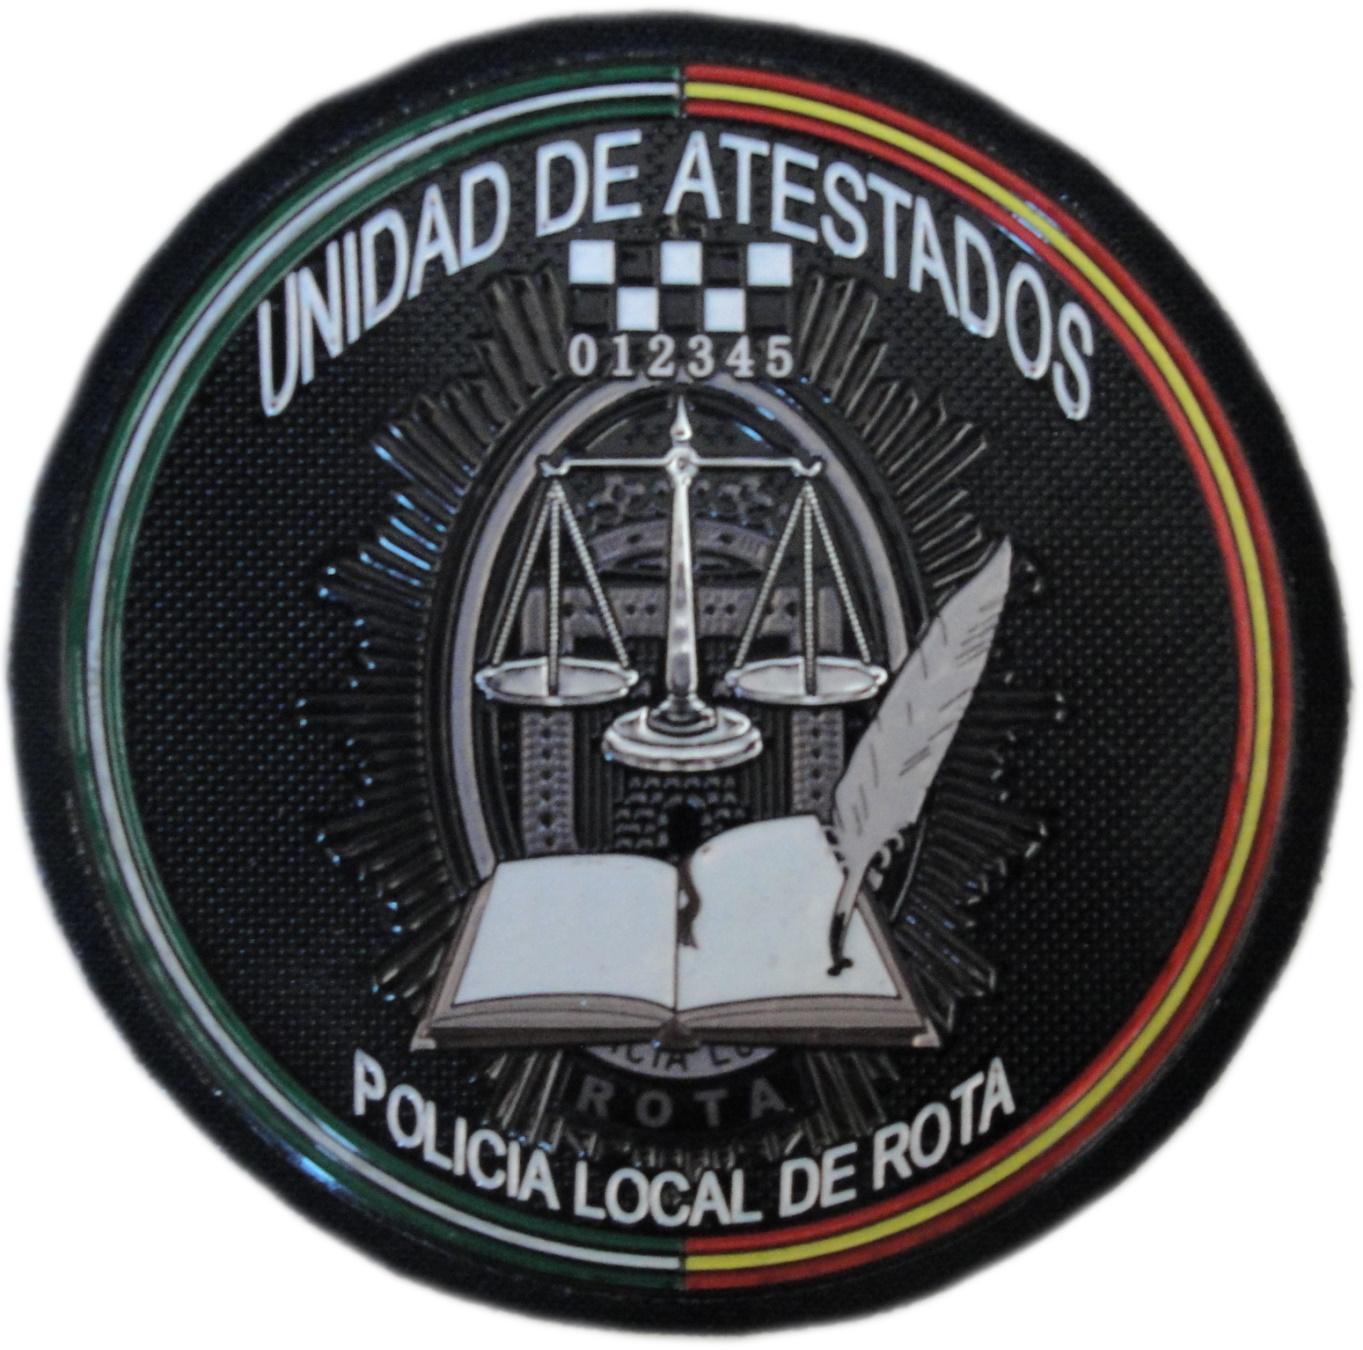 Policía Local de Rota Unidad de Atestados Andalucía parche insignia emblema distintivo